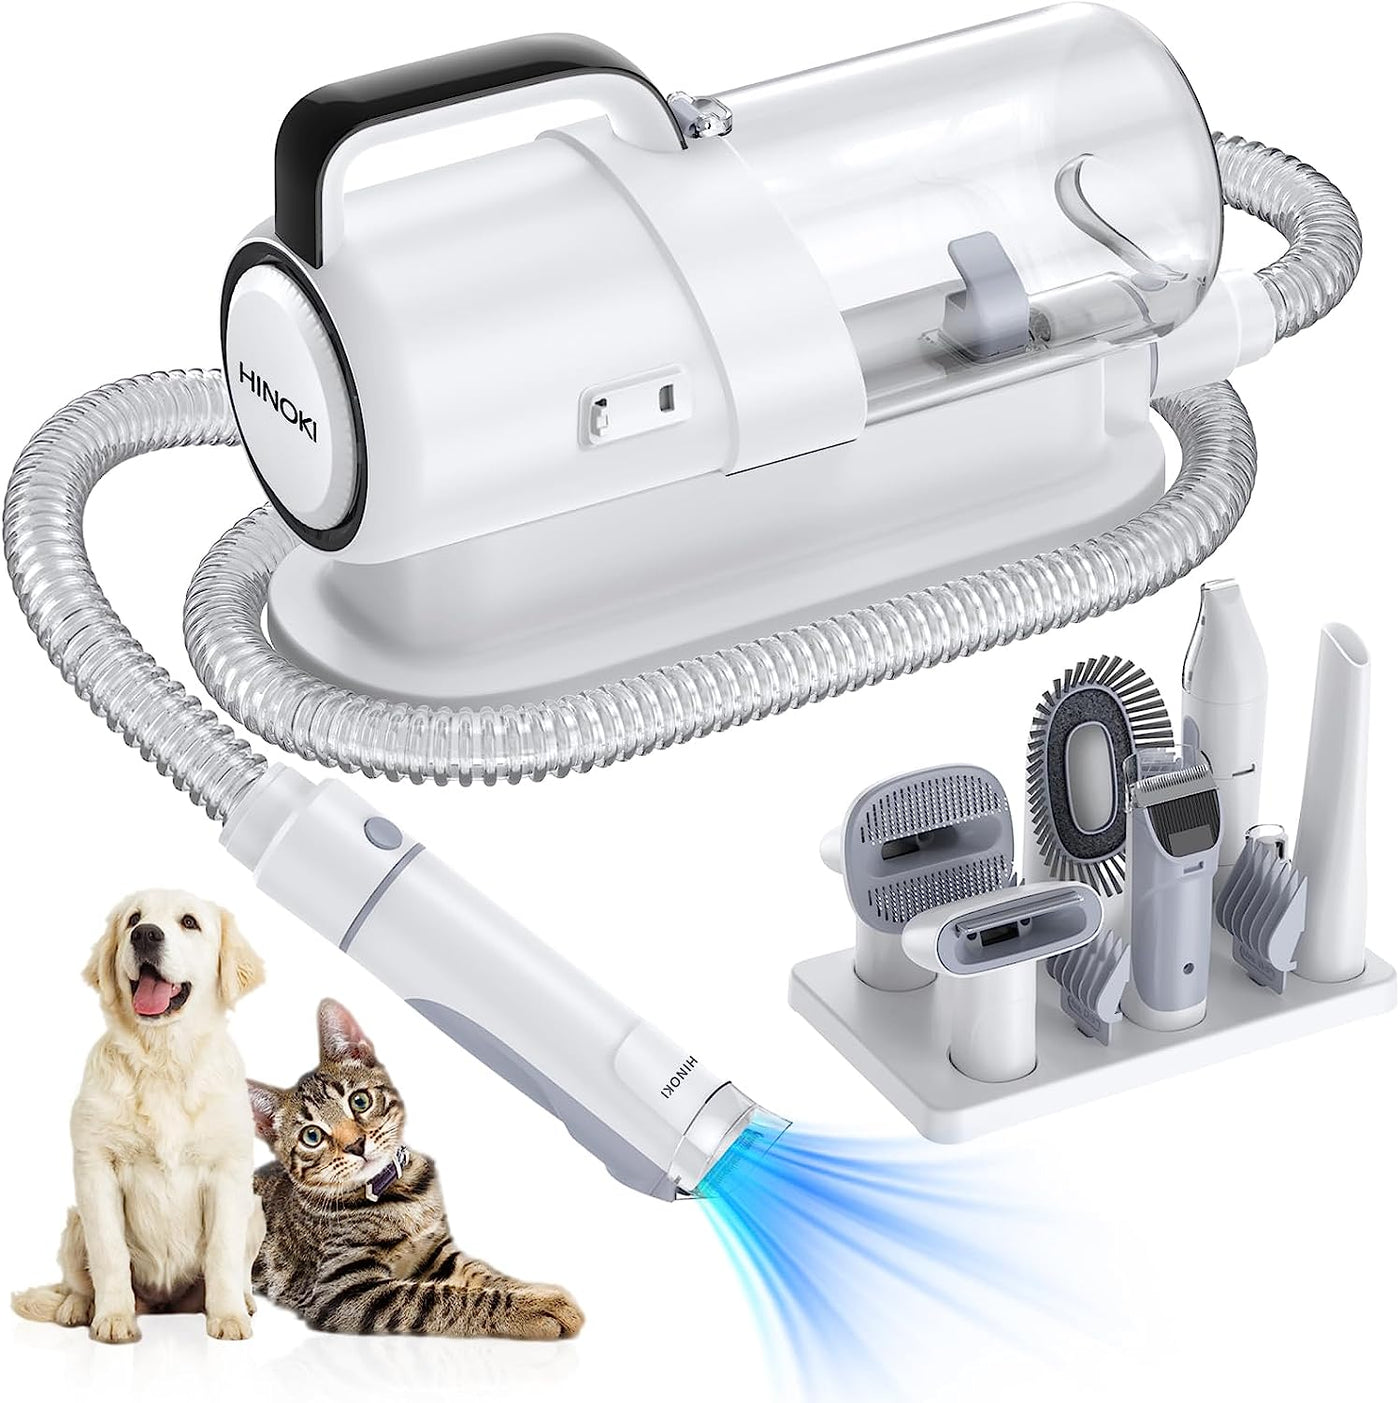 Pro pet grooming kit，Pet Grooming Vacuum Picks Up 99% Pet Hair,7 Proven Grooming Tools, 2.3L Capacity Pet Hair Dust Cup